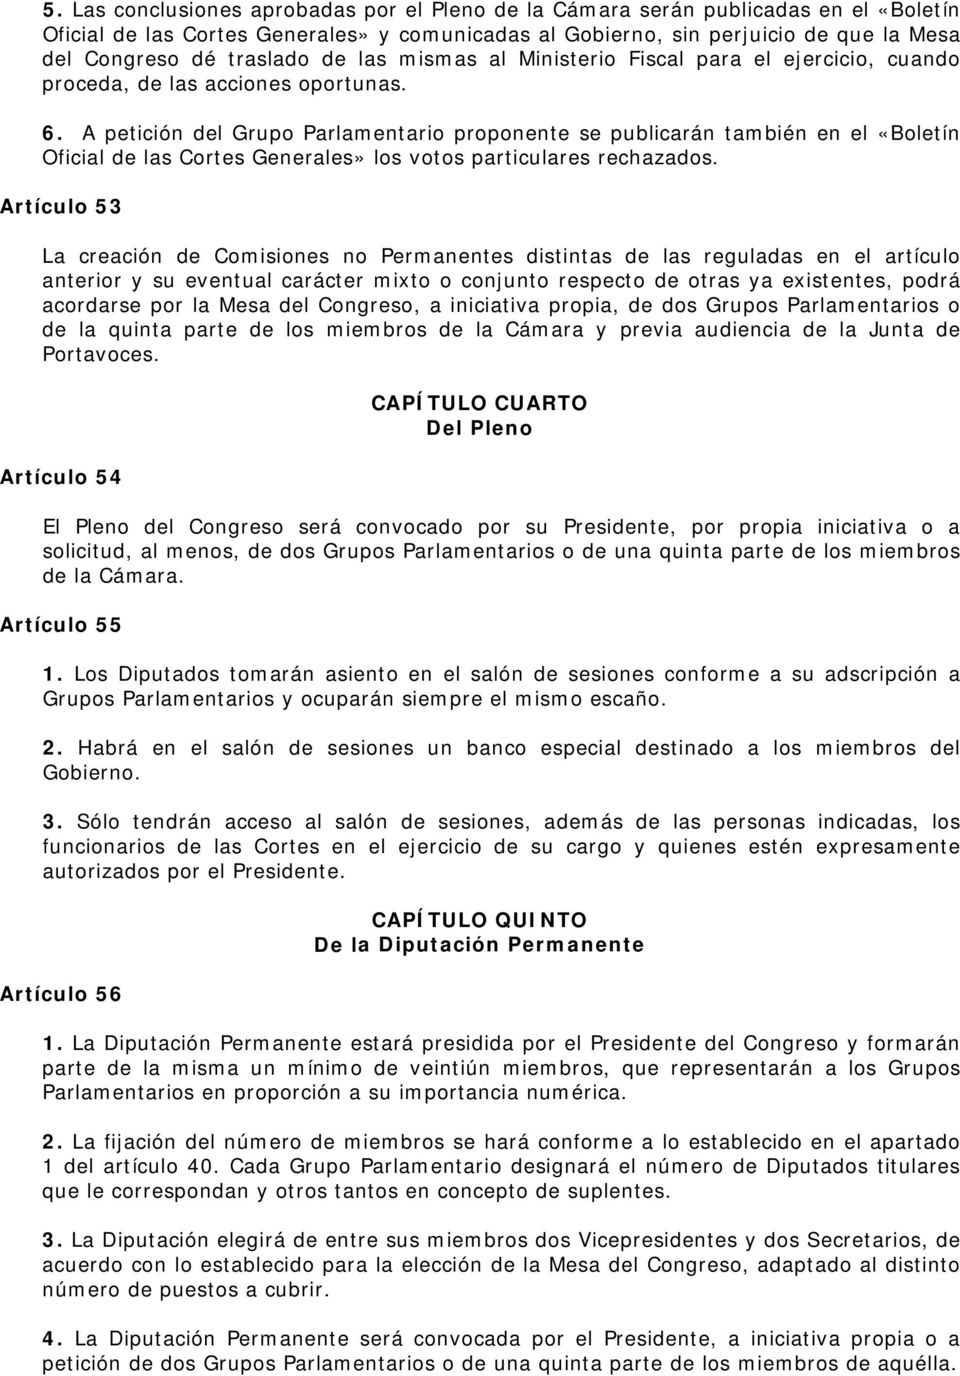 A petición del Grupo Parlamentario proponente se publicarán también en el «Boletín Oficial de las Cortes Generales» los votos particulares rechazados.